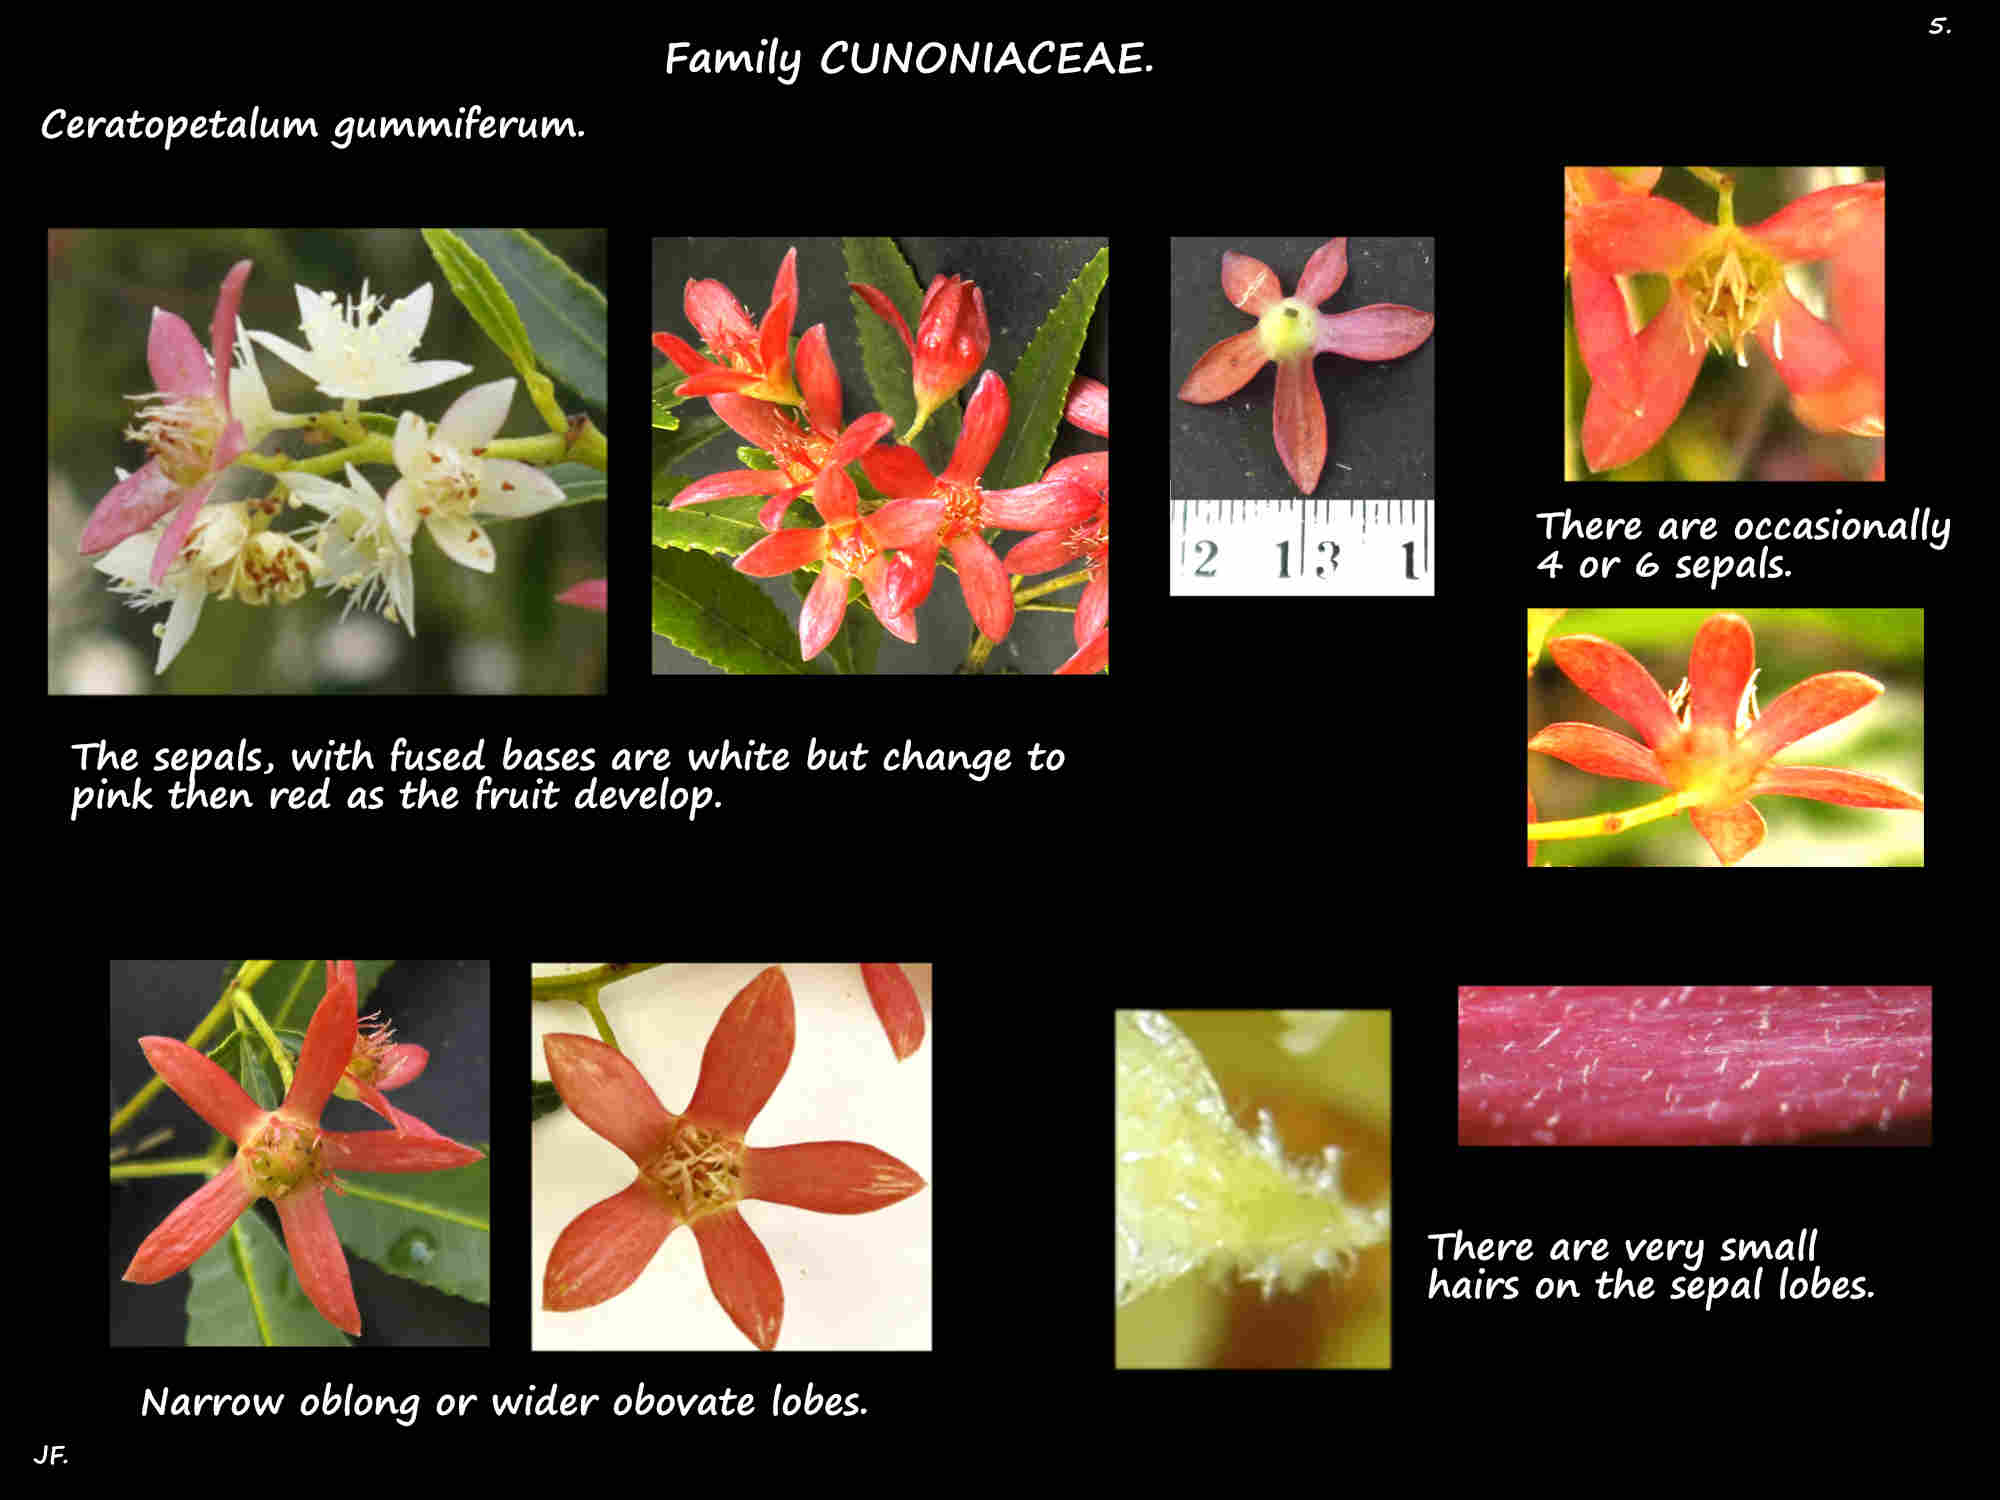 5 Ceratopetalum flowers & the sepals